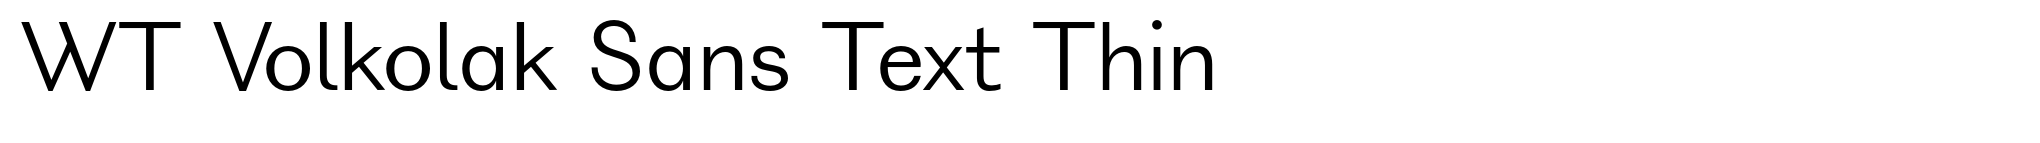 WT Volkolak Sans Text Thin image